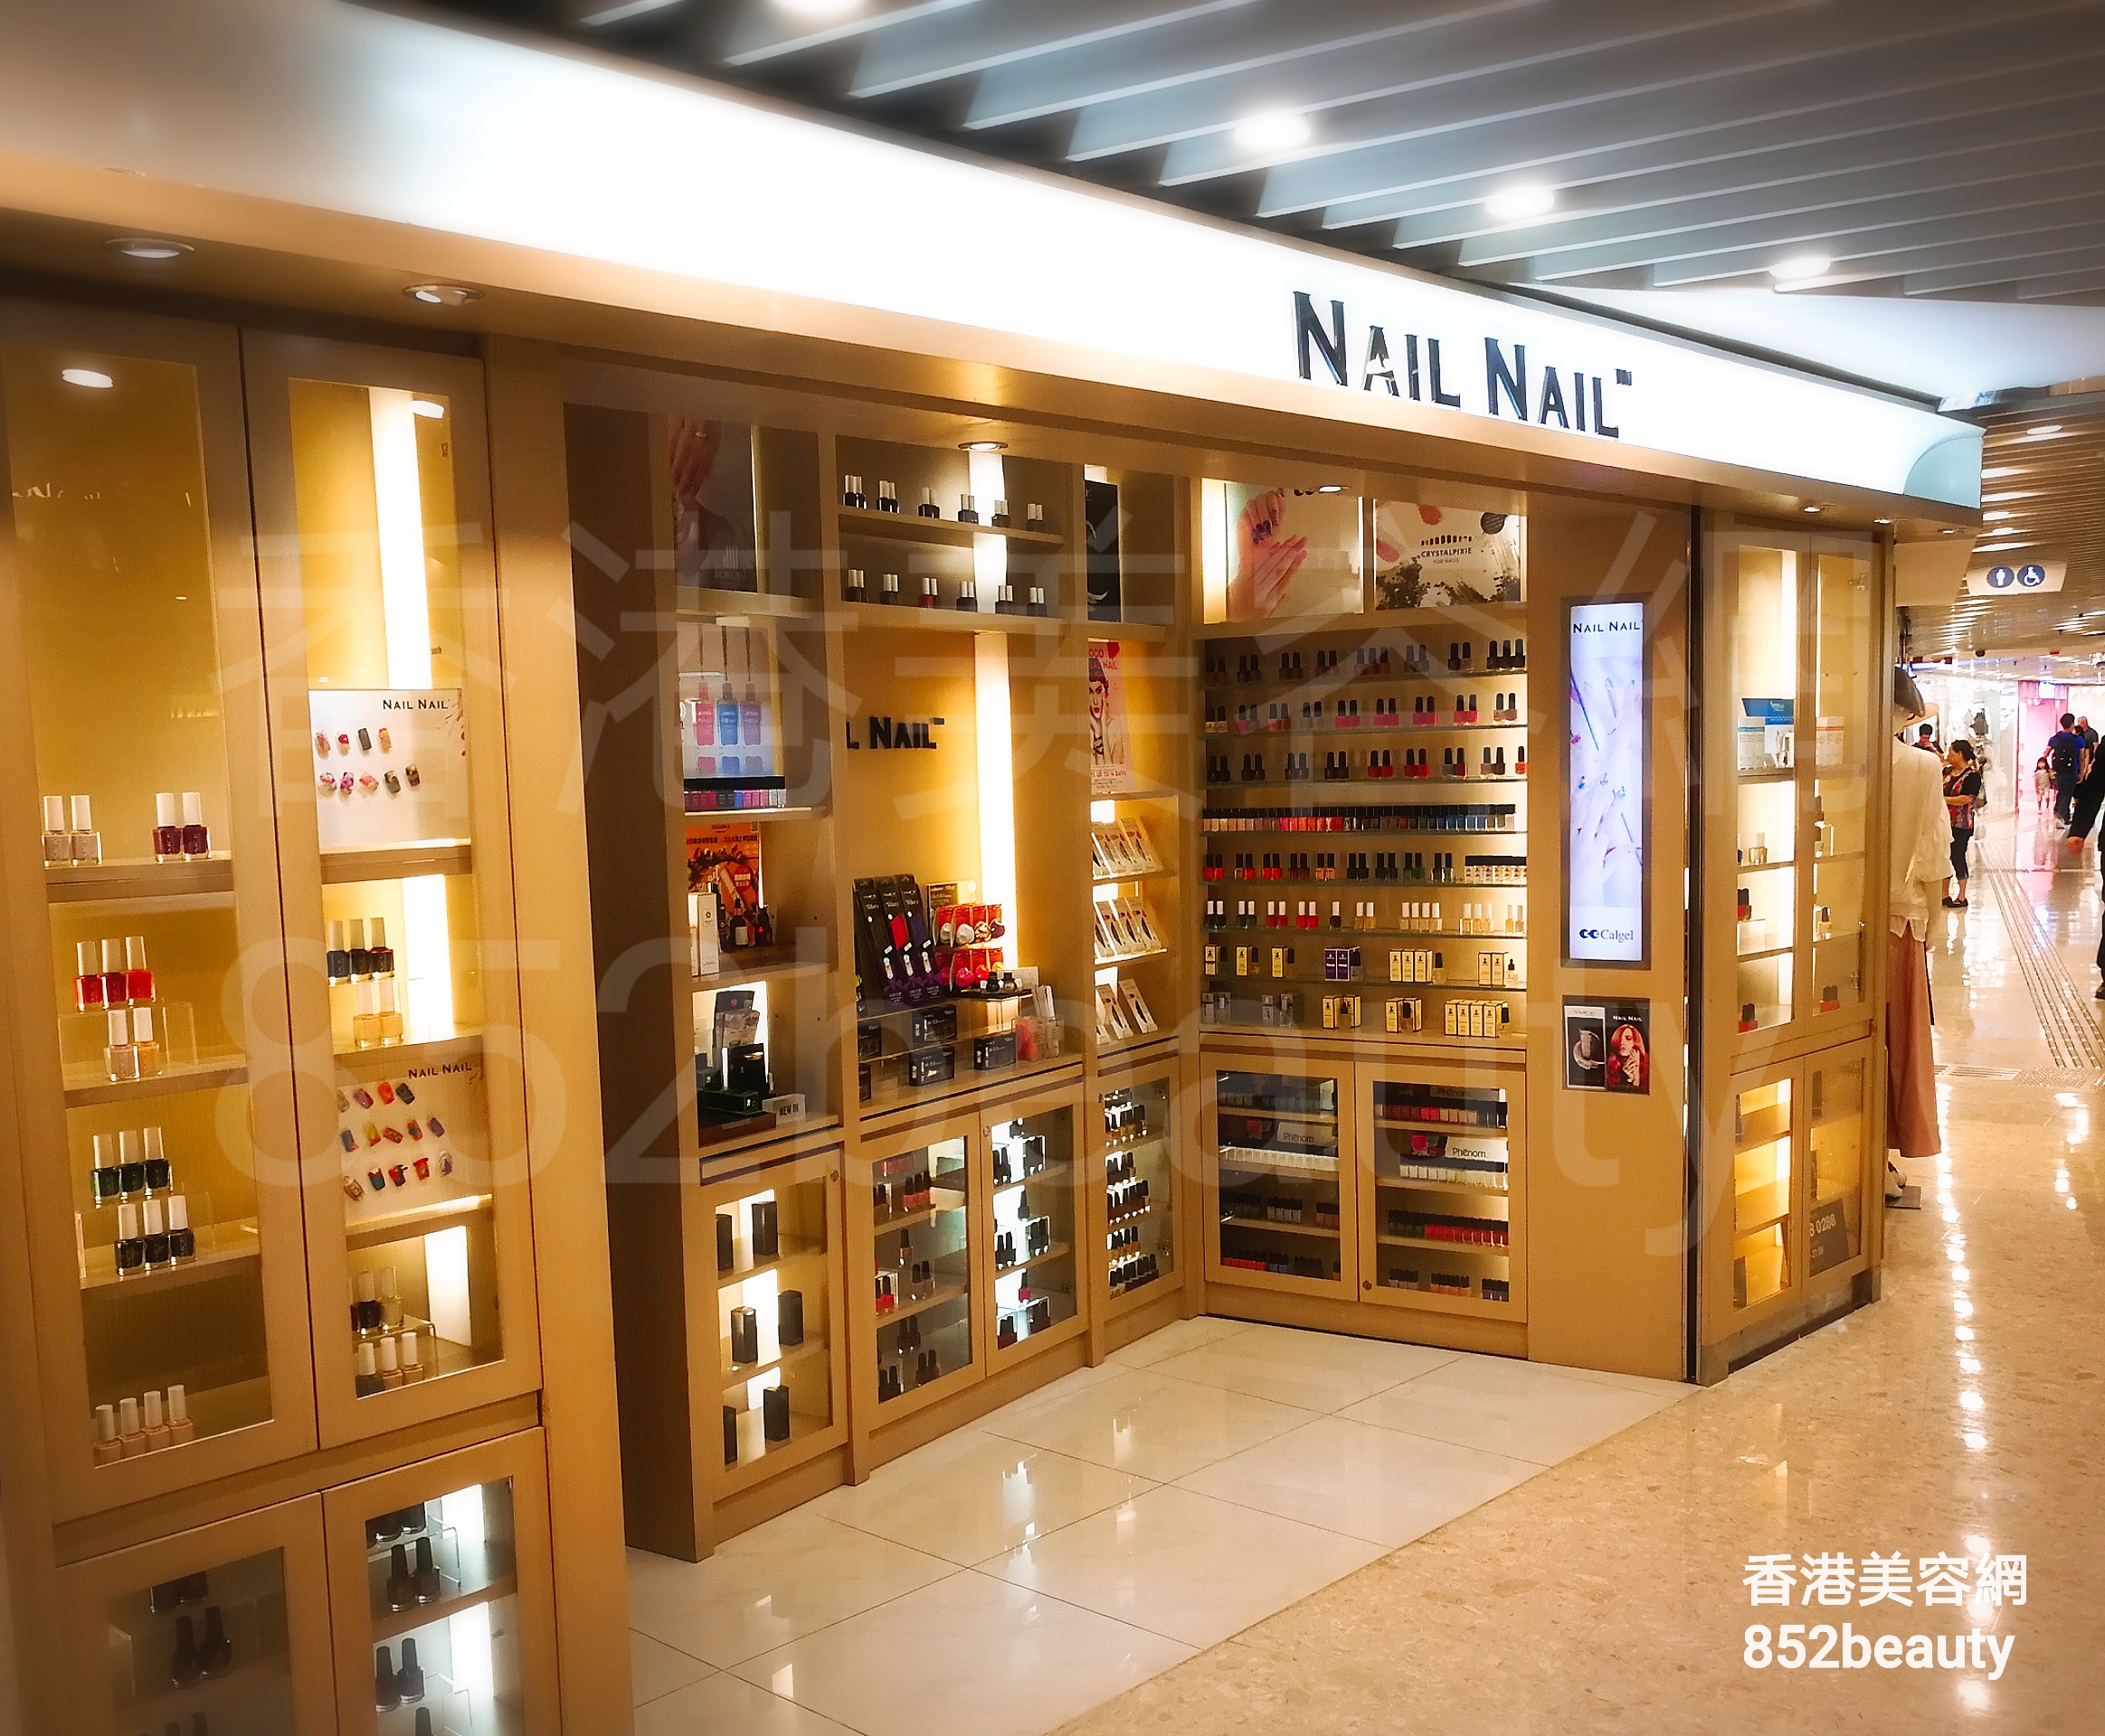 香港美容網 Hong Kong Beauty Salon 美容院 / 美容師: NAIL NAIL (沙田)